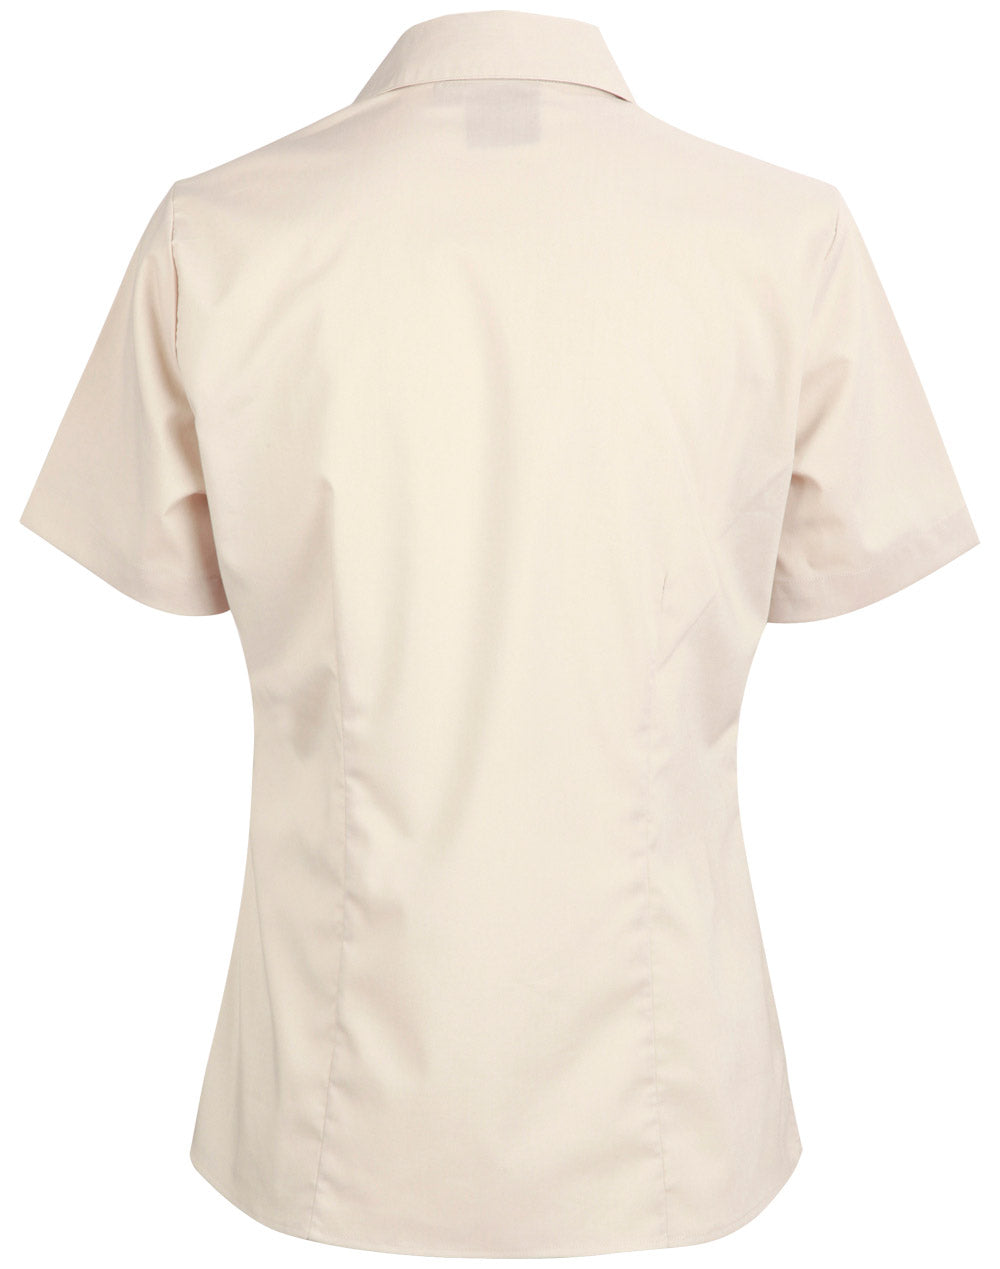 Winning Spirit Women's Teflon Executive Short Sleeve Shirt-(BS07S)